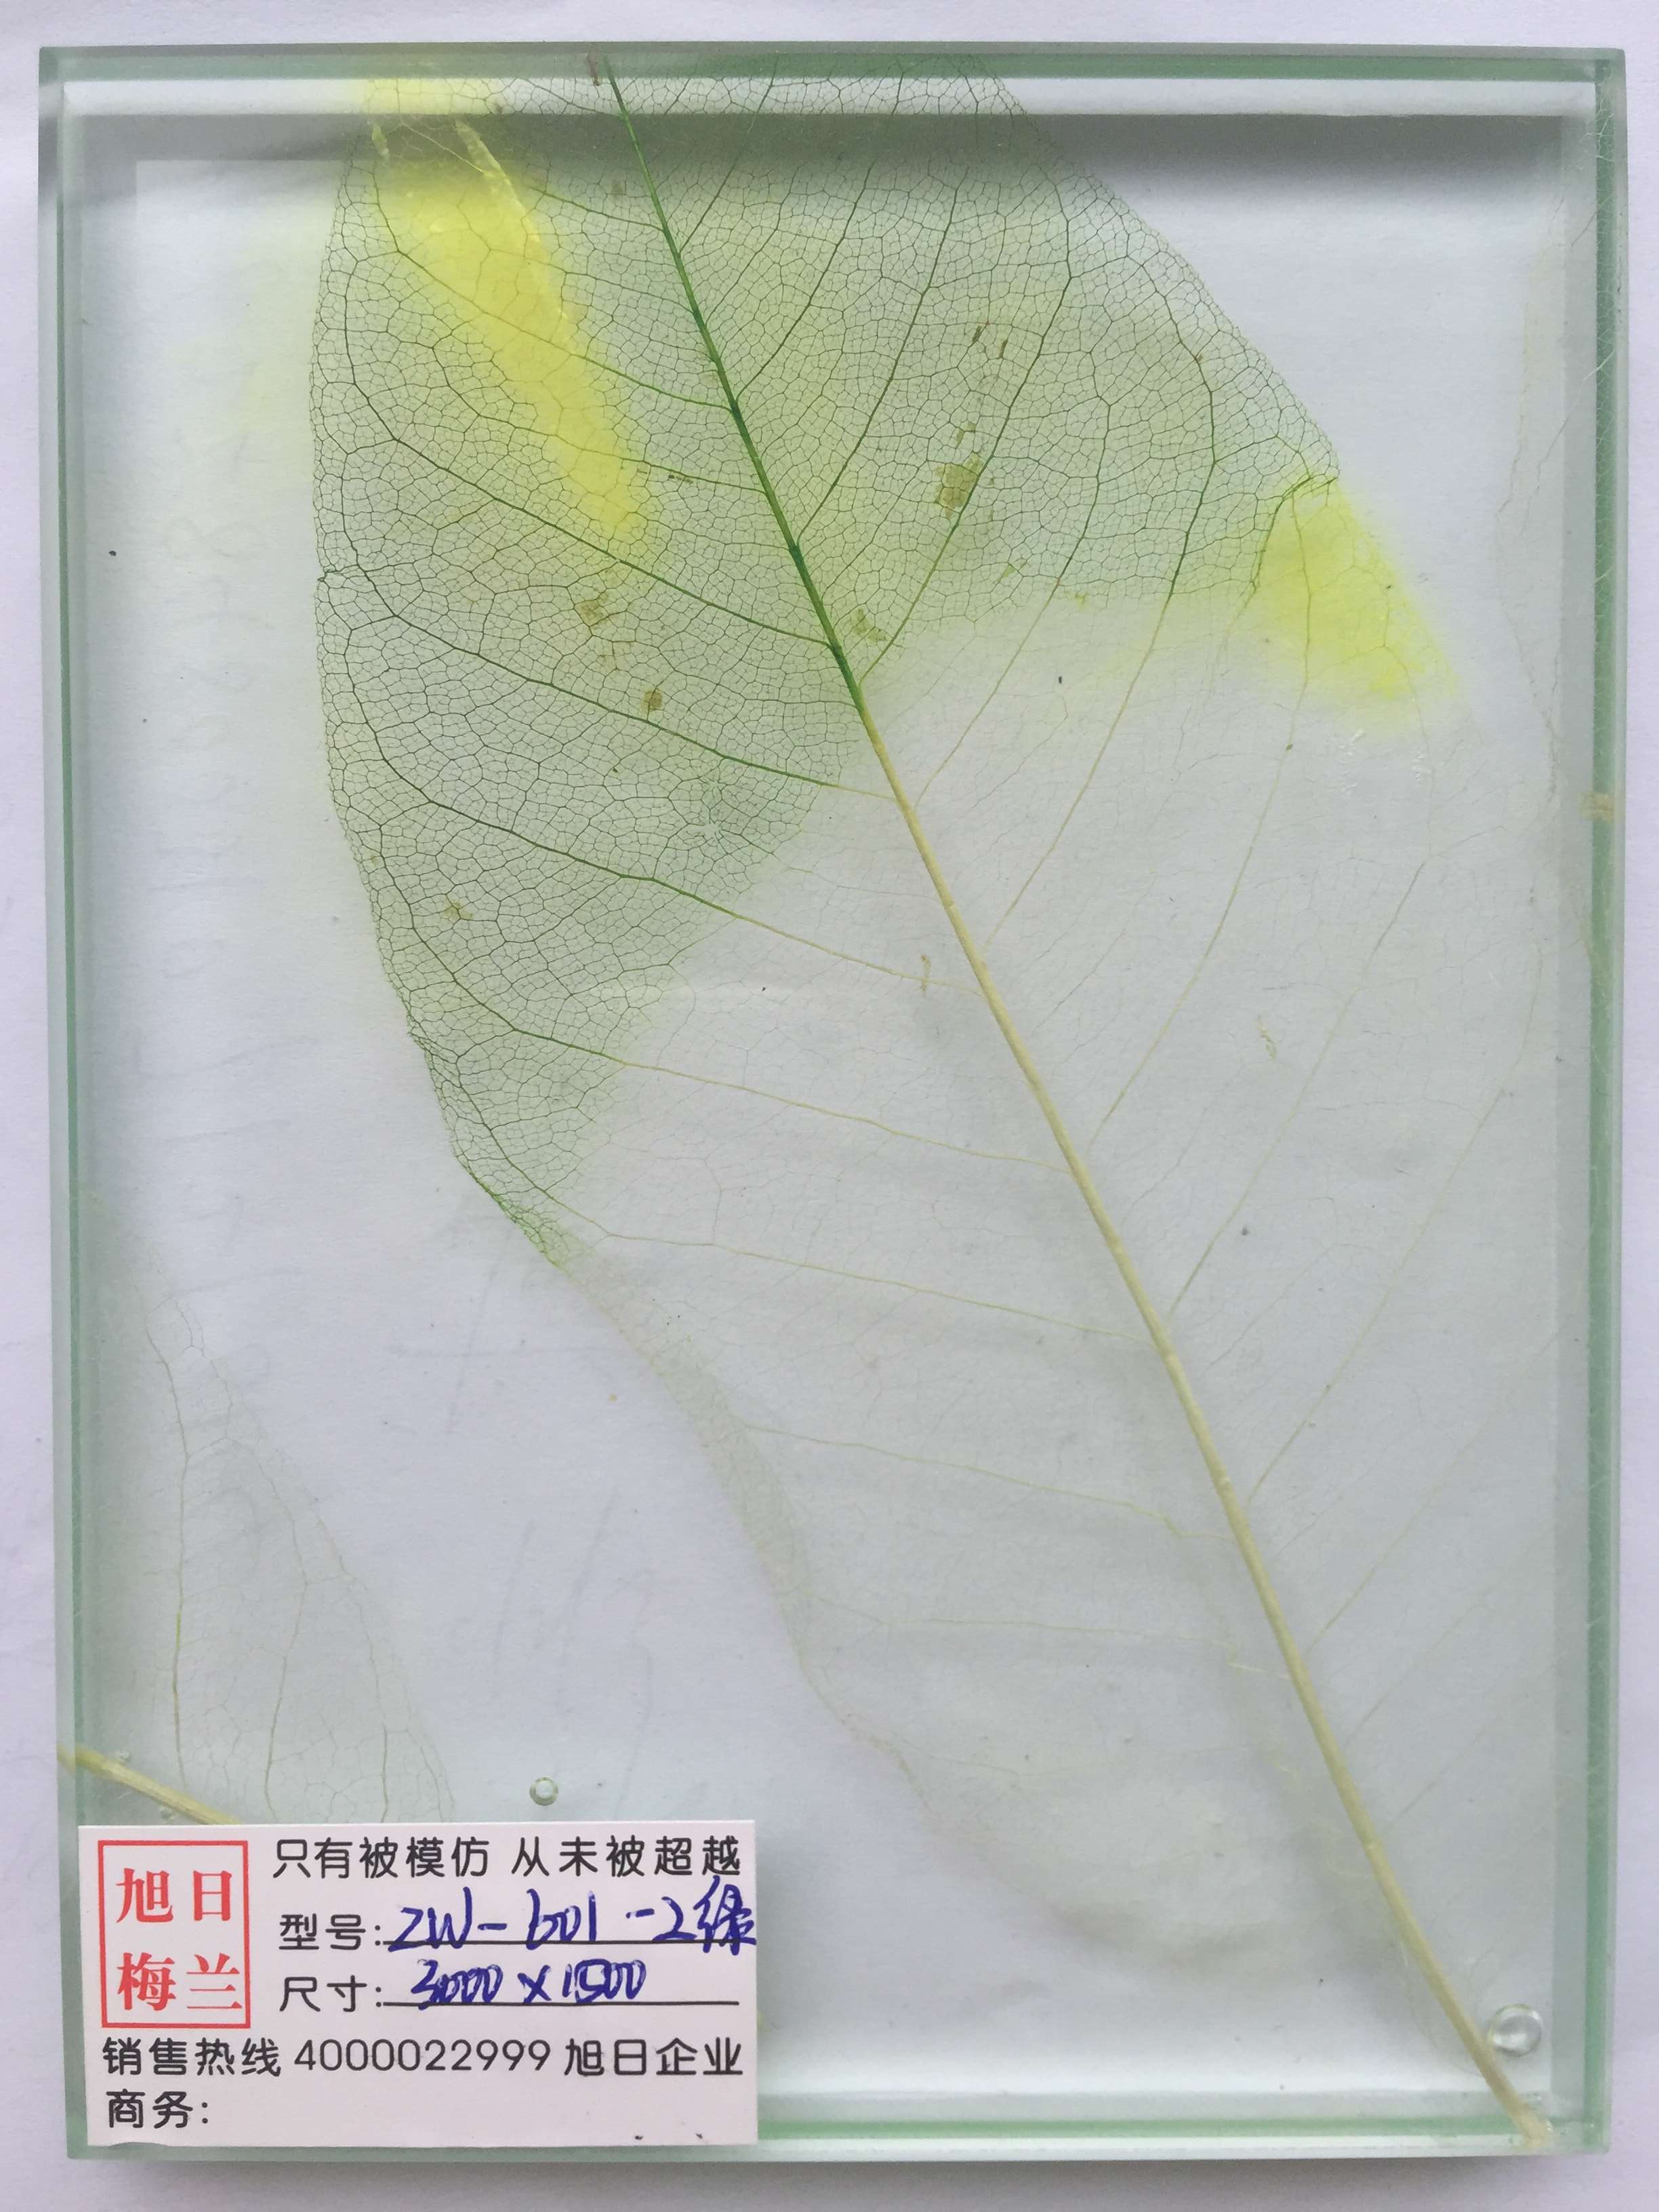 植物夹胶玻璃zw-601湿法夹胶批发